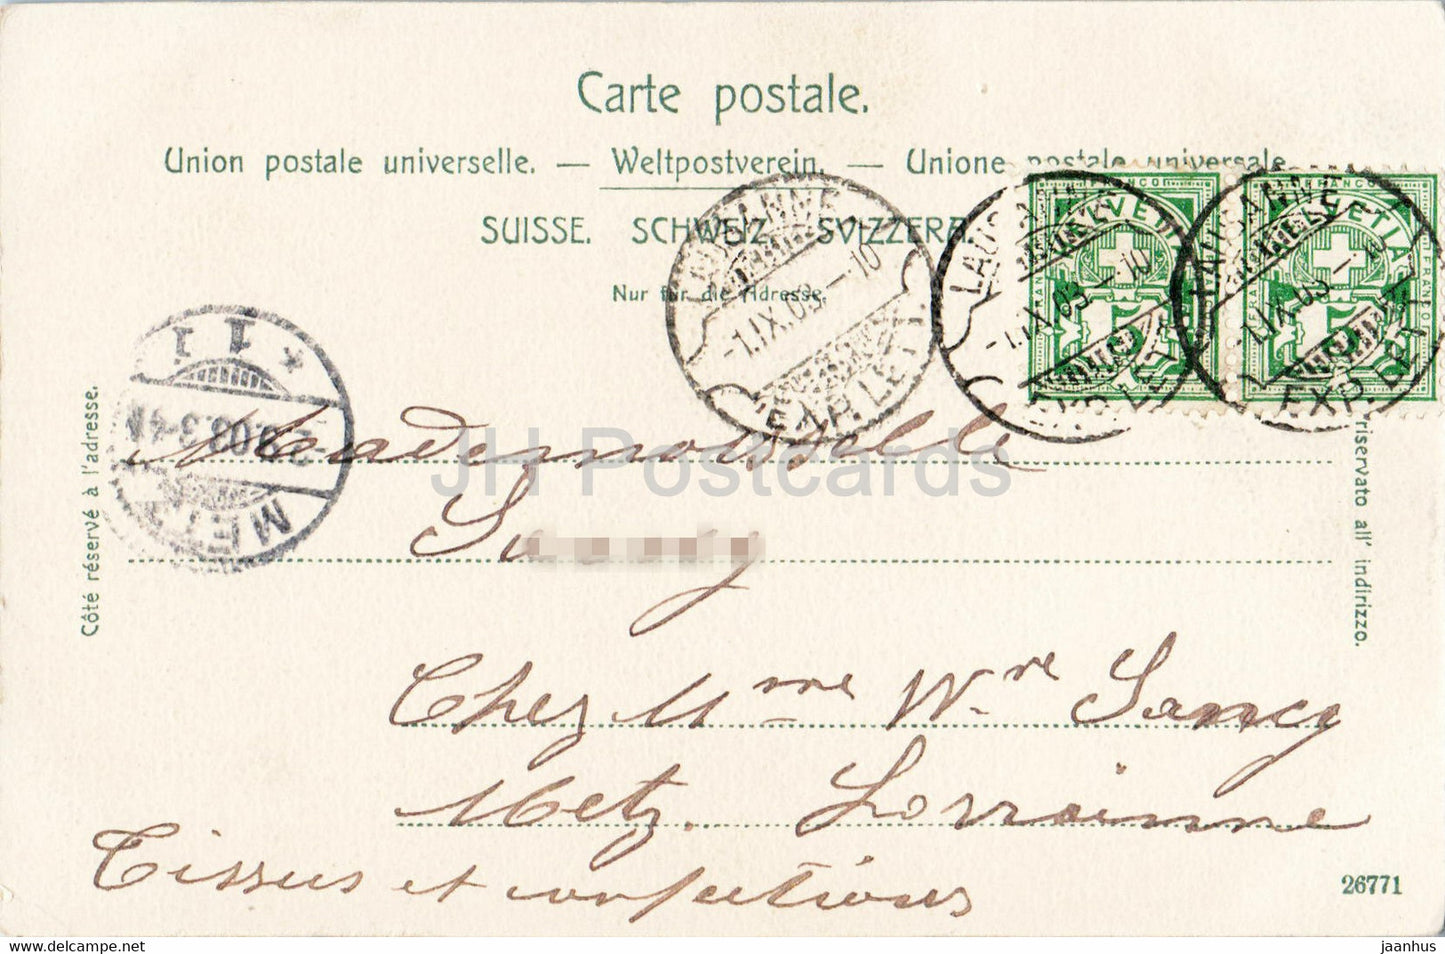 Ouchy - Tour Haldimann - alte Postkarte - 1903 - Schweiz - gebraucht